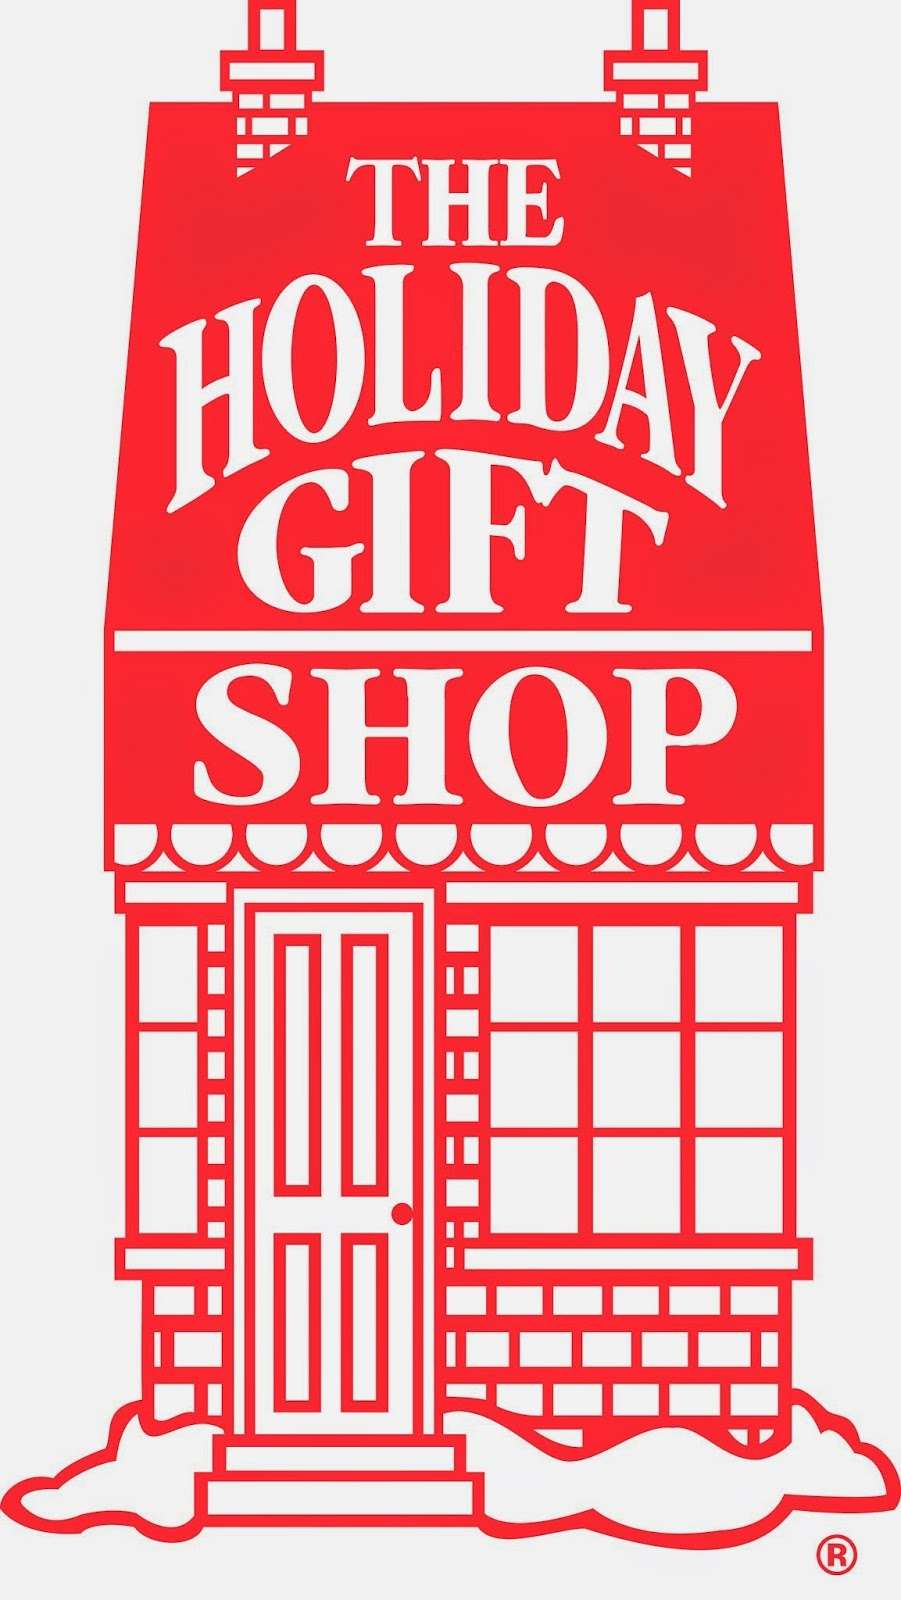 Santas Secret Shop | 4009 Market St, Upper Chichester, PA 19014 | Phone: (610) 494-8880